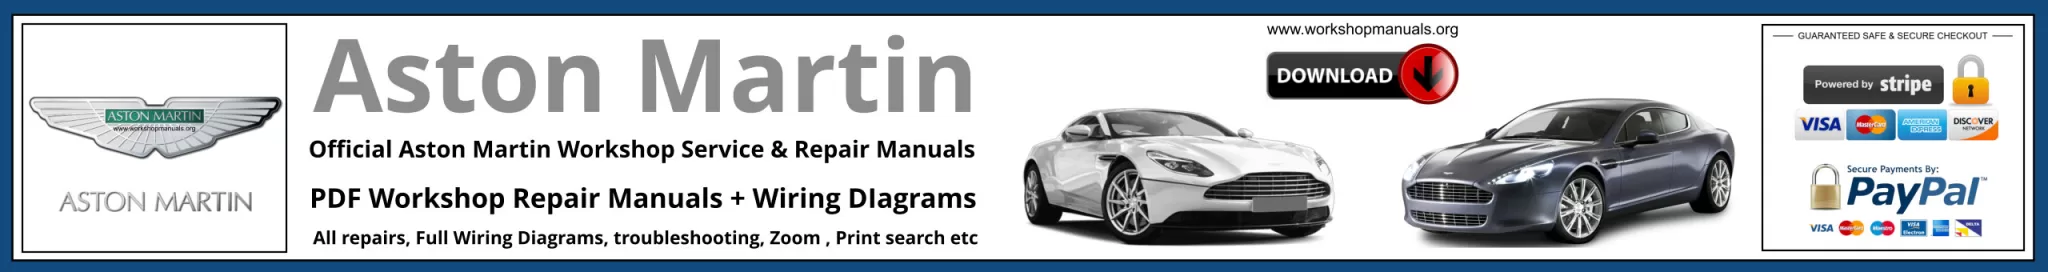 Aston Martin Workshop Repair Manual Banner